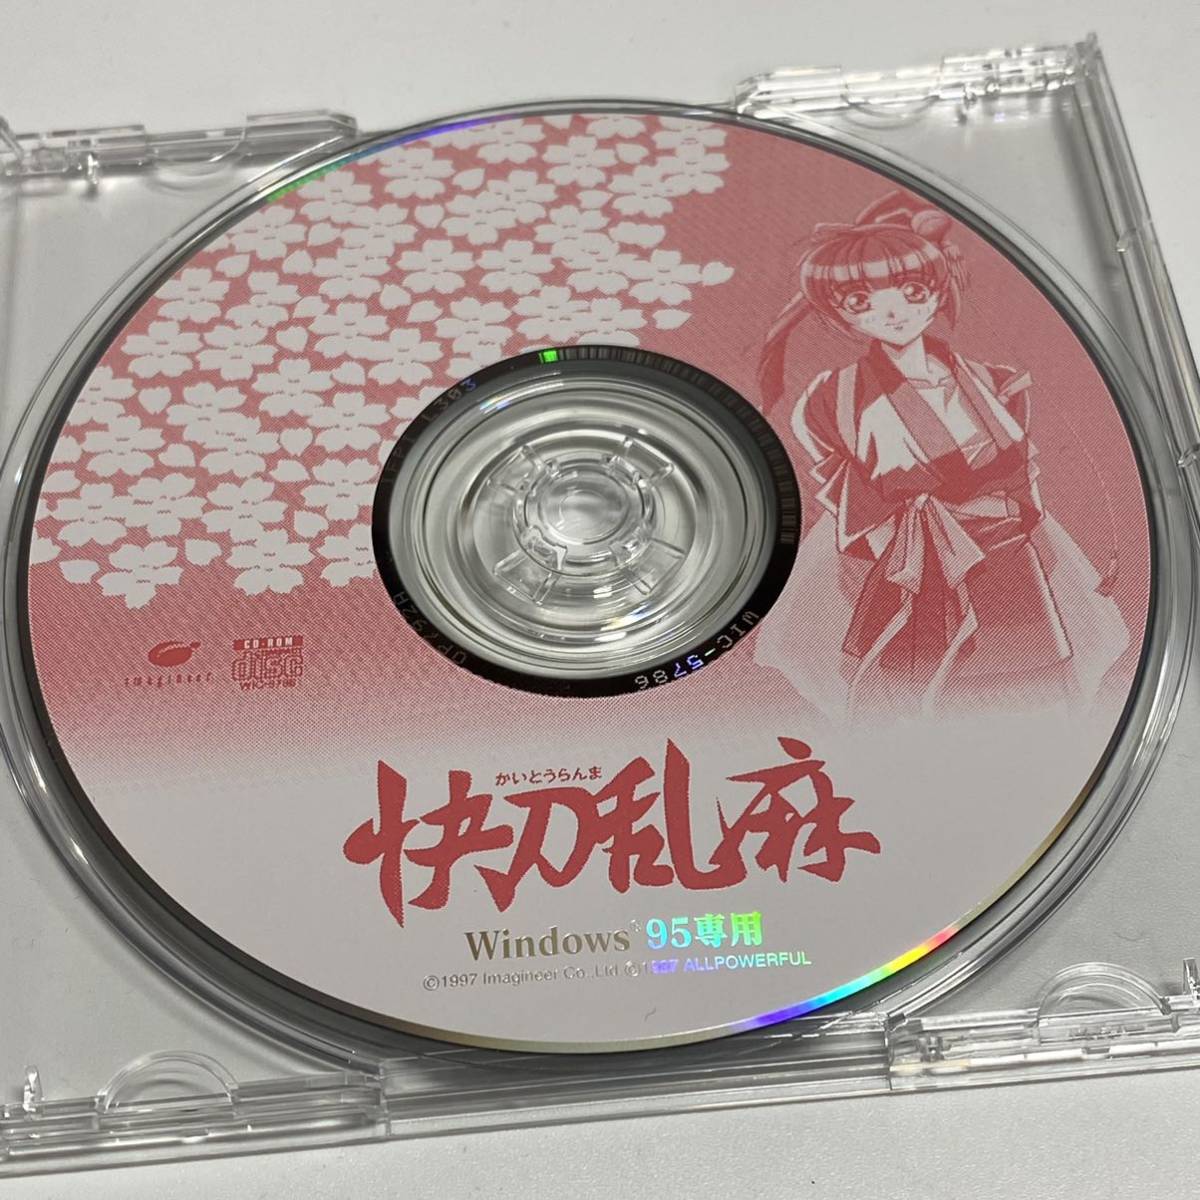 Windows95 CDソフト 快刀乱麻 かいとうらんま アニメ レア 希少 廃盤 絶版 CD-ROM_画像4